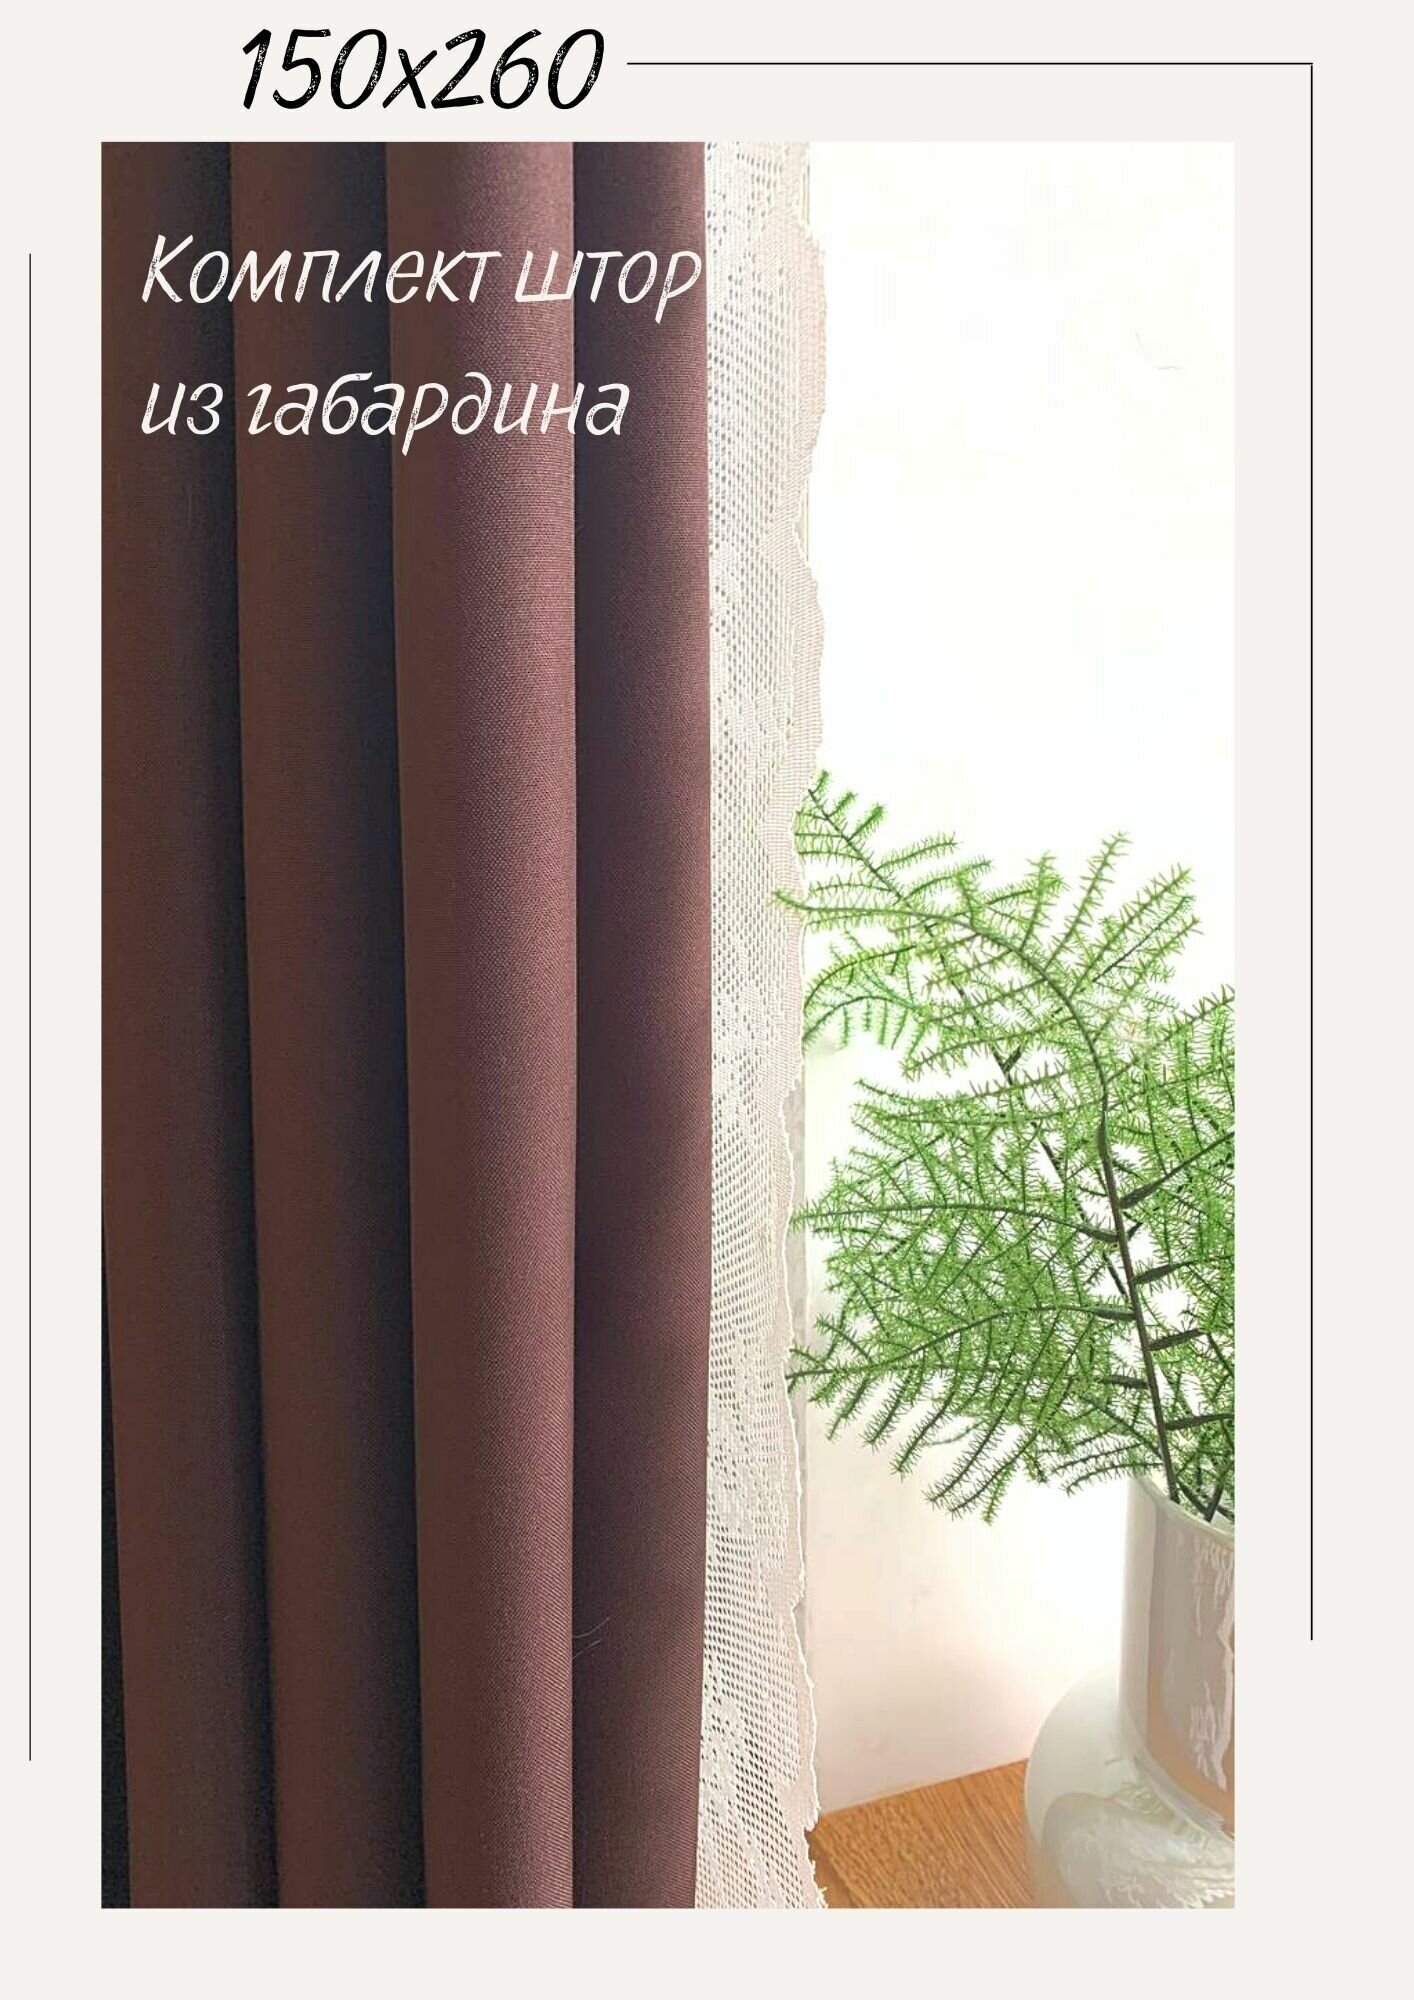 IRIS Шторы однотонные 145х260 2(ДВА)полотна декоративные из габардина коричневый, шоколадный